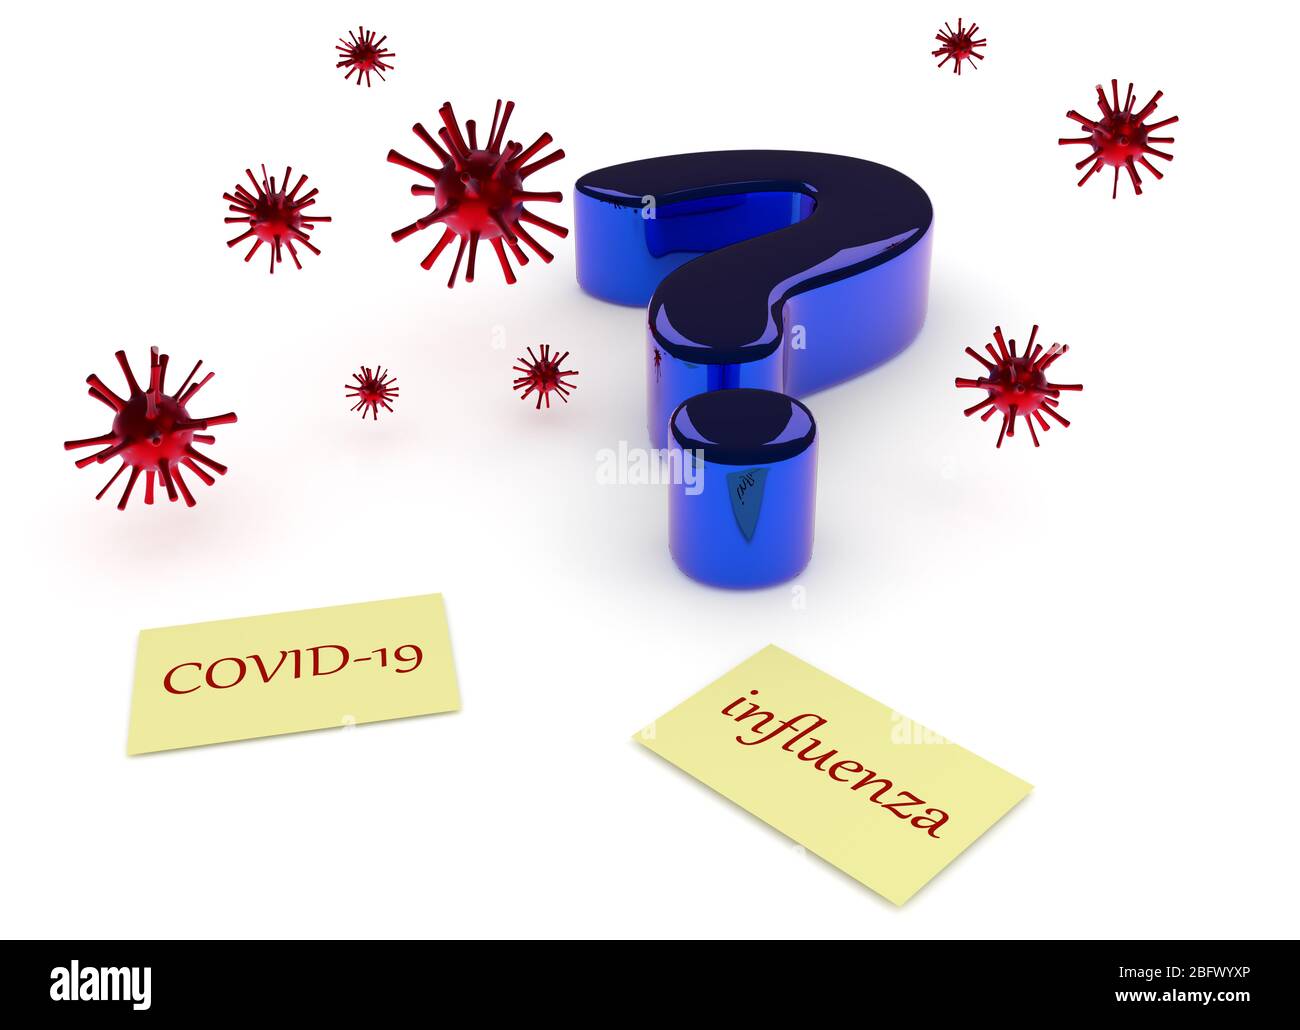 Grande punto interrogativo blu, icone virali e note adesive con le parole covid-19 e influenza Foto Stock